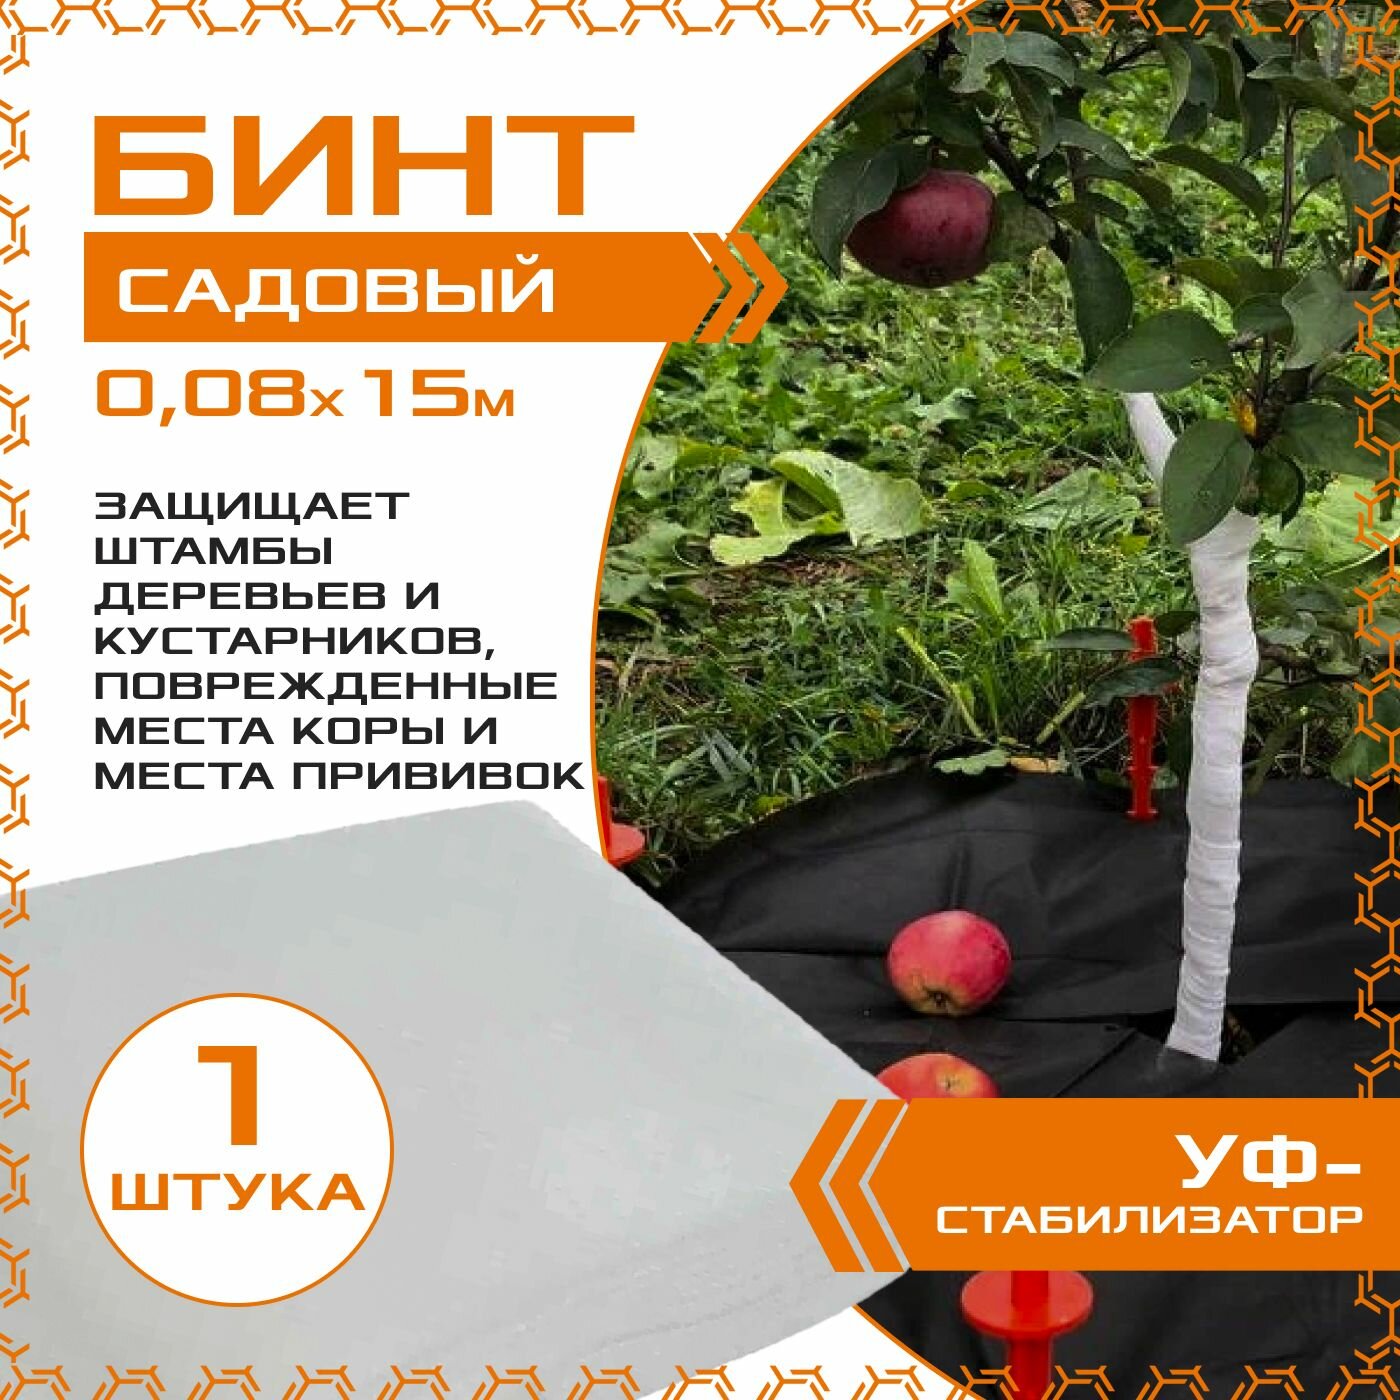 Бинт садовый 0.08 х 10м (1шт.) с УФ-стабилизатором для защиты деревьев и кустарников спанбонд